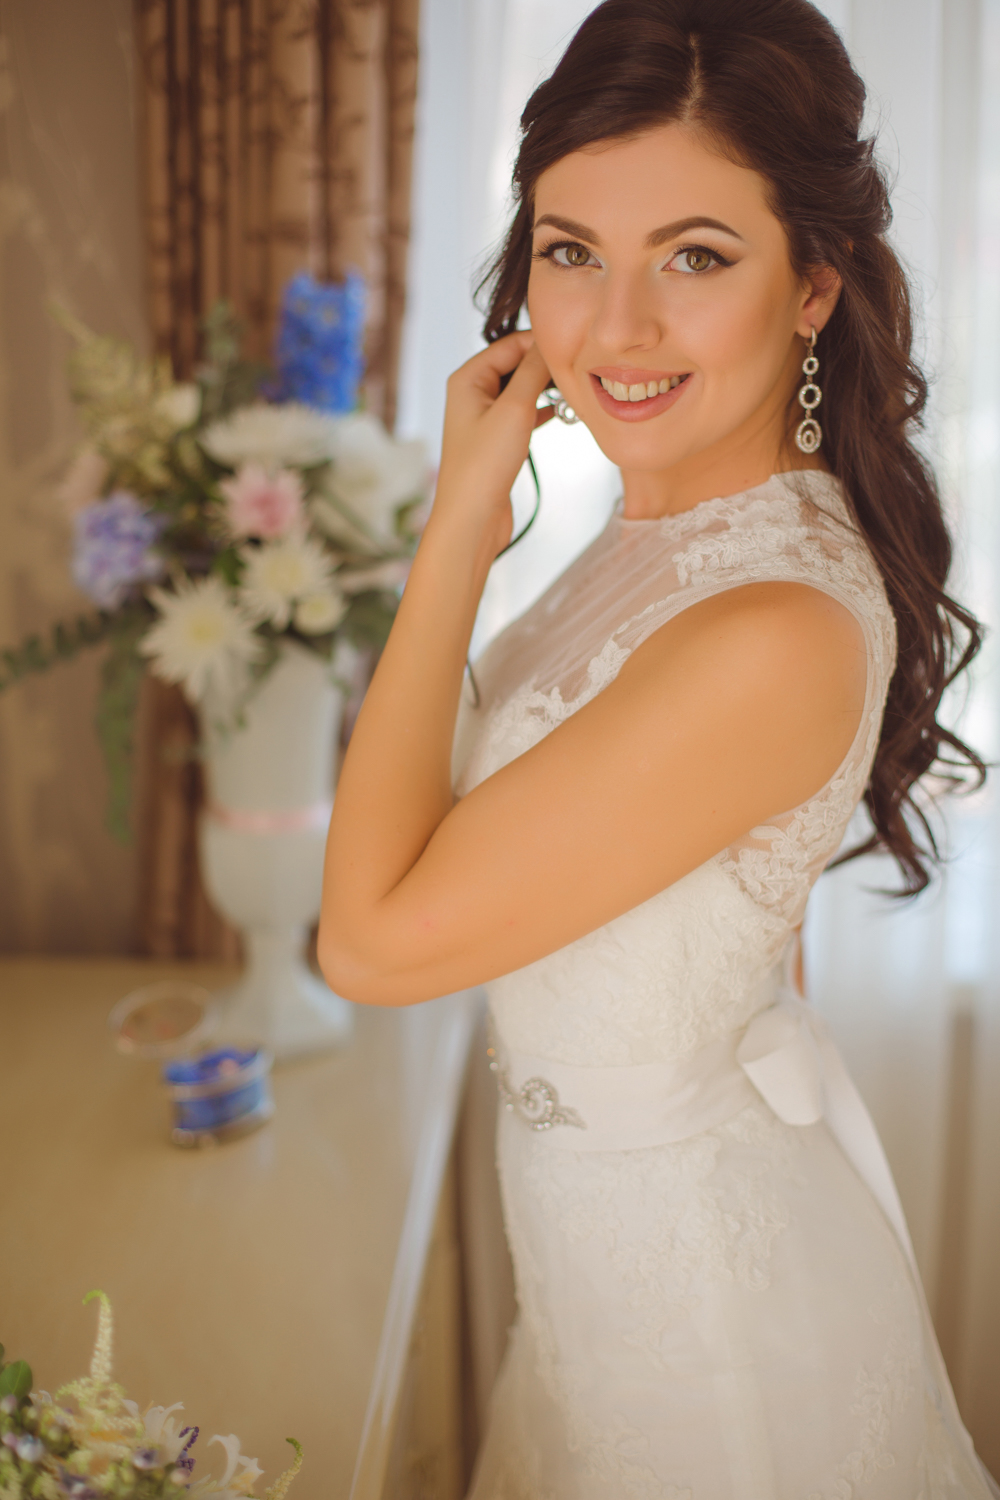 Организация выездной свадьбы в Крыму - студия Инны Бажан.